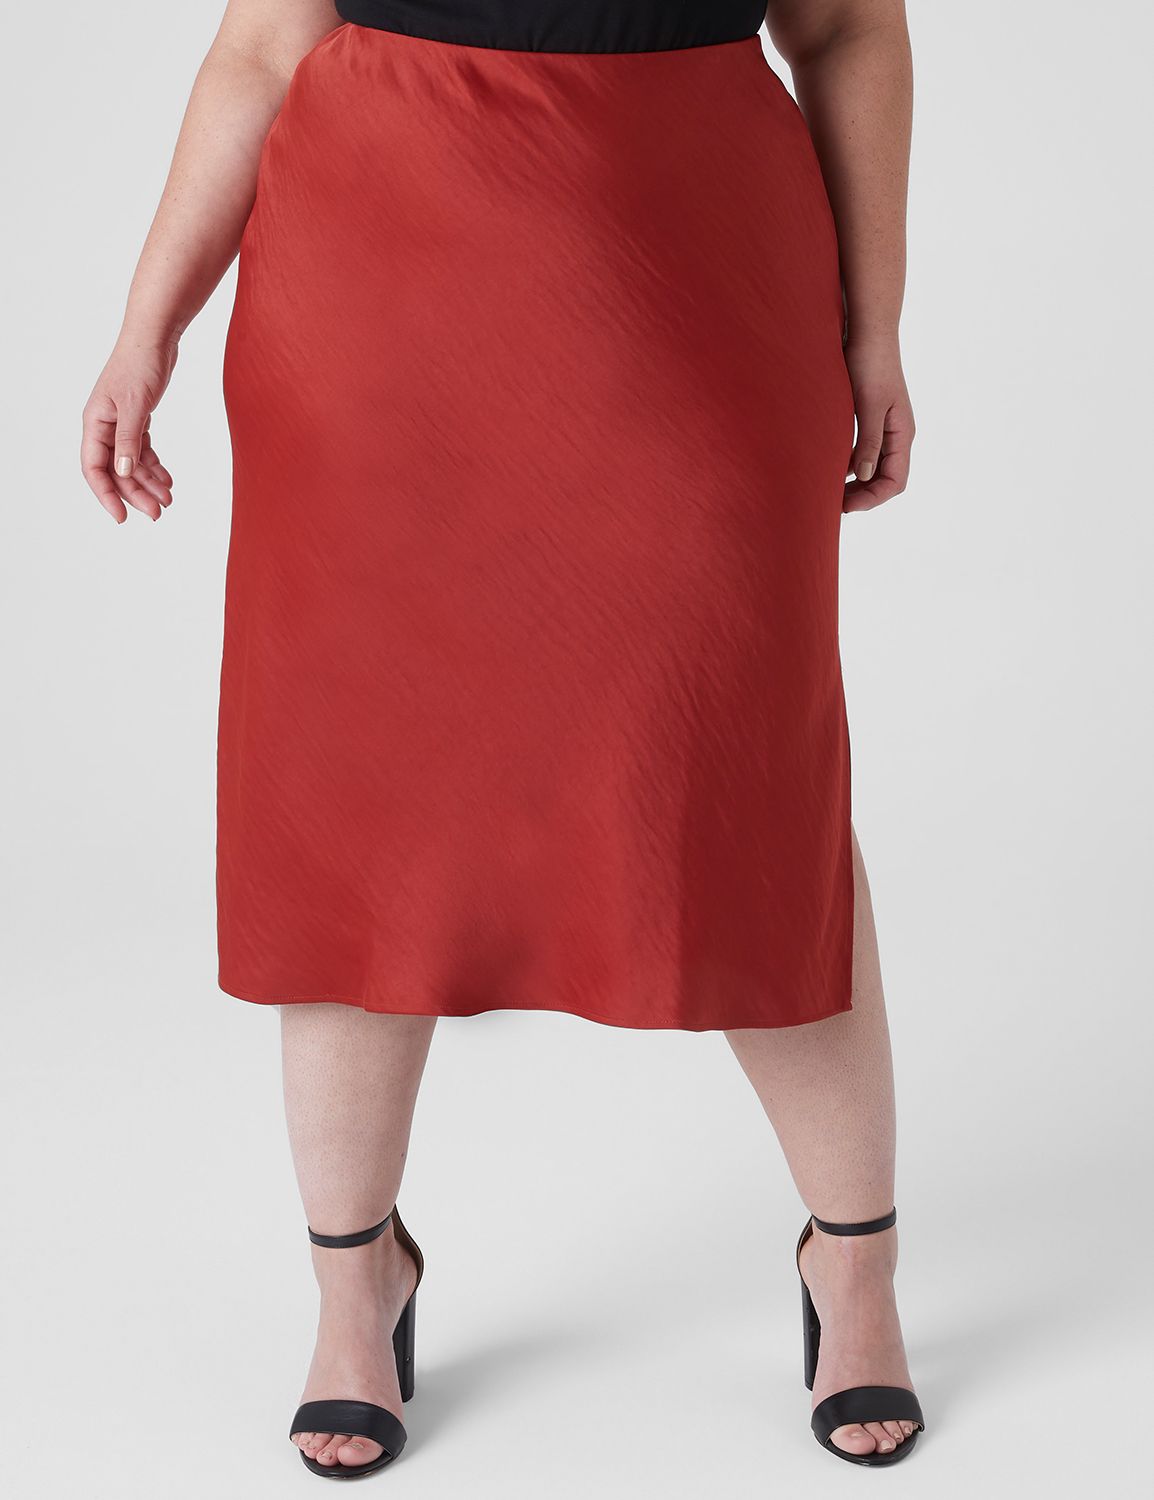 Cupid Shapewear Sleek Essentials High Waist Shaper Slip Skirt – Dreamz  Lingerie